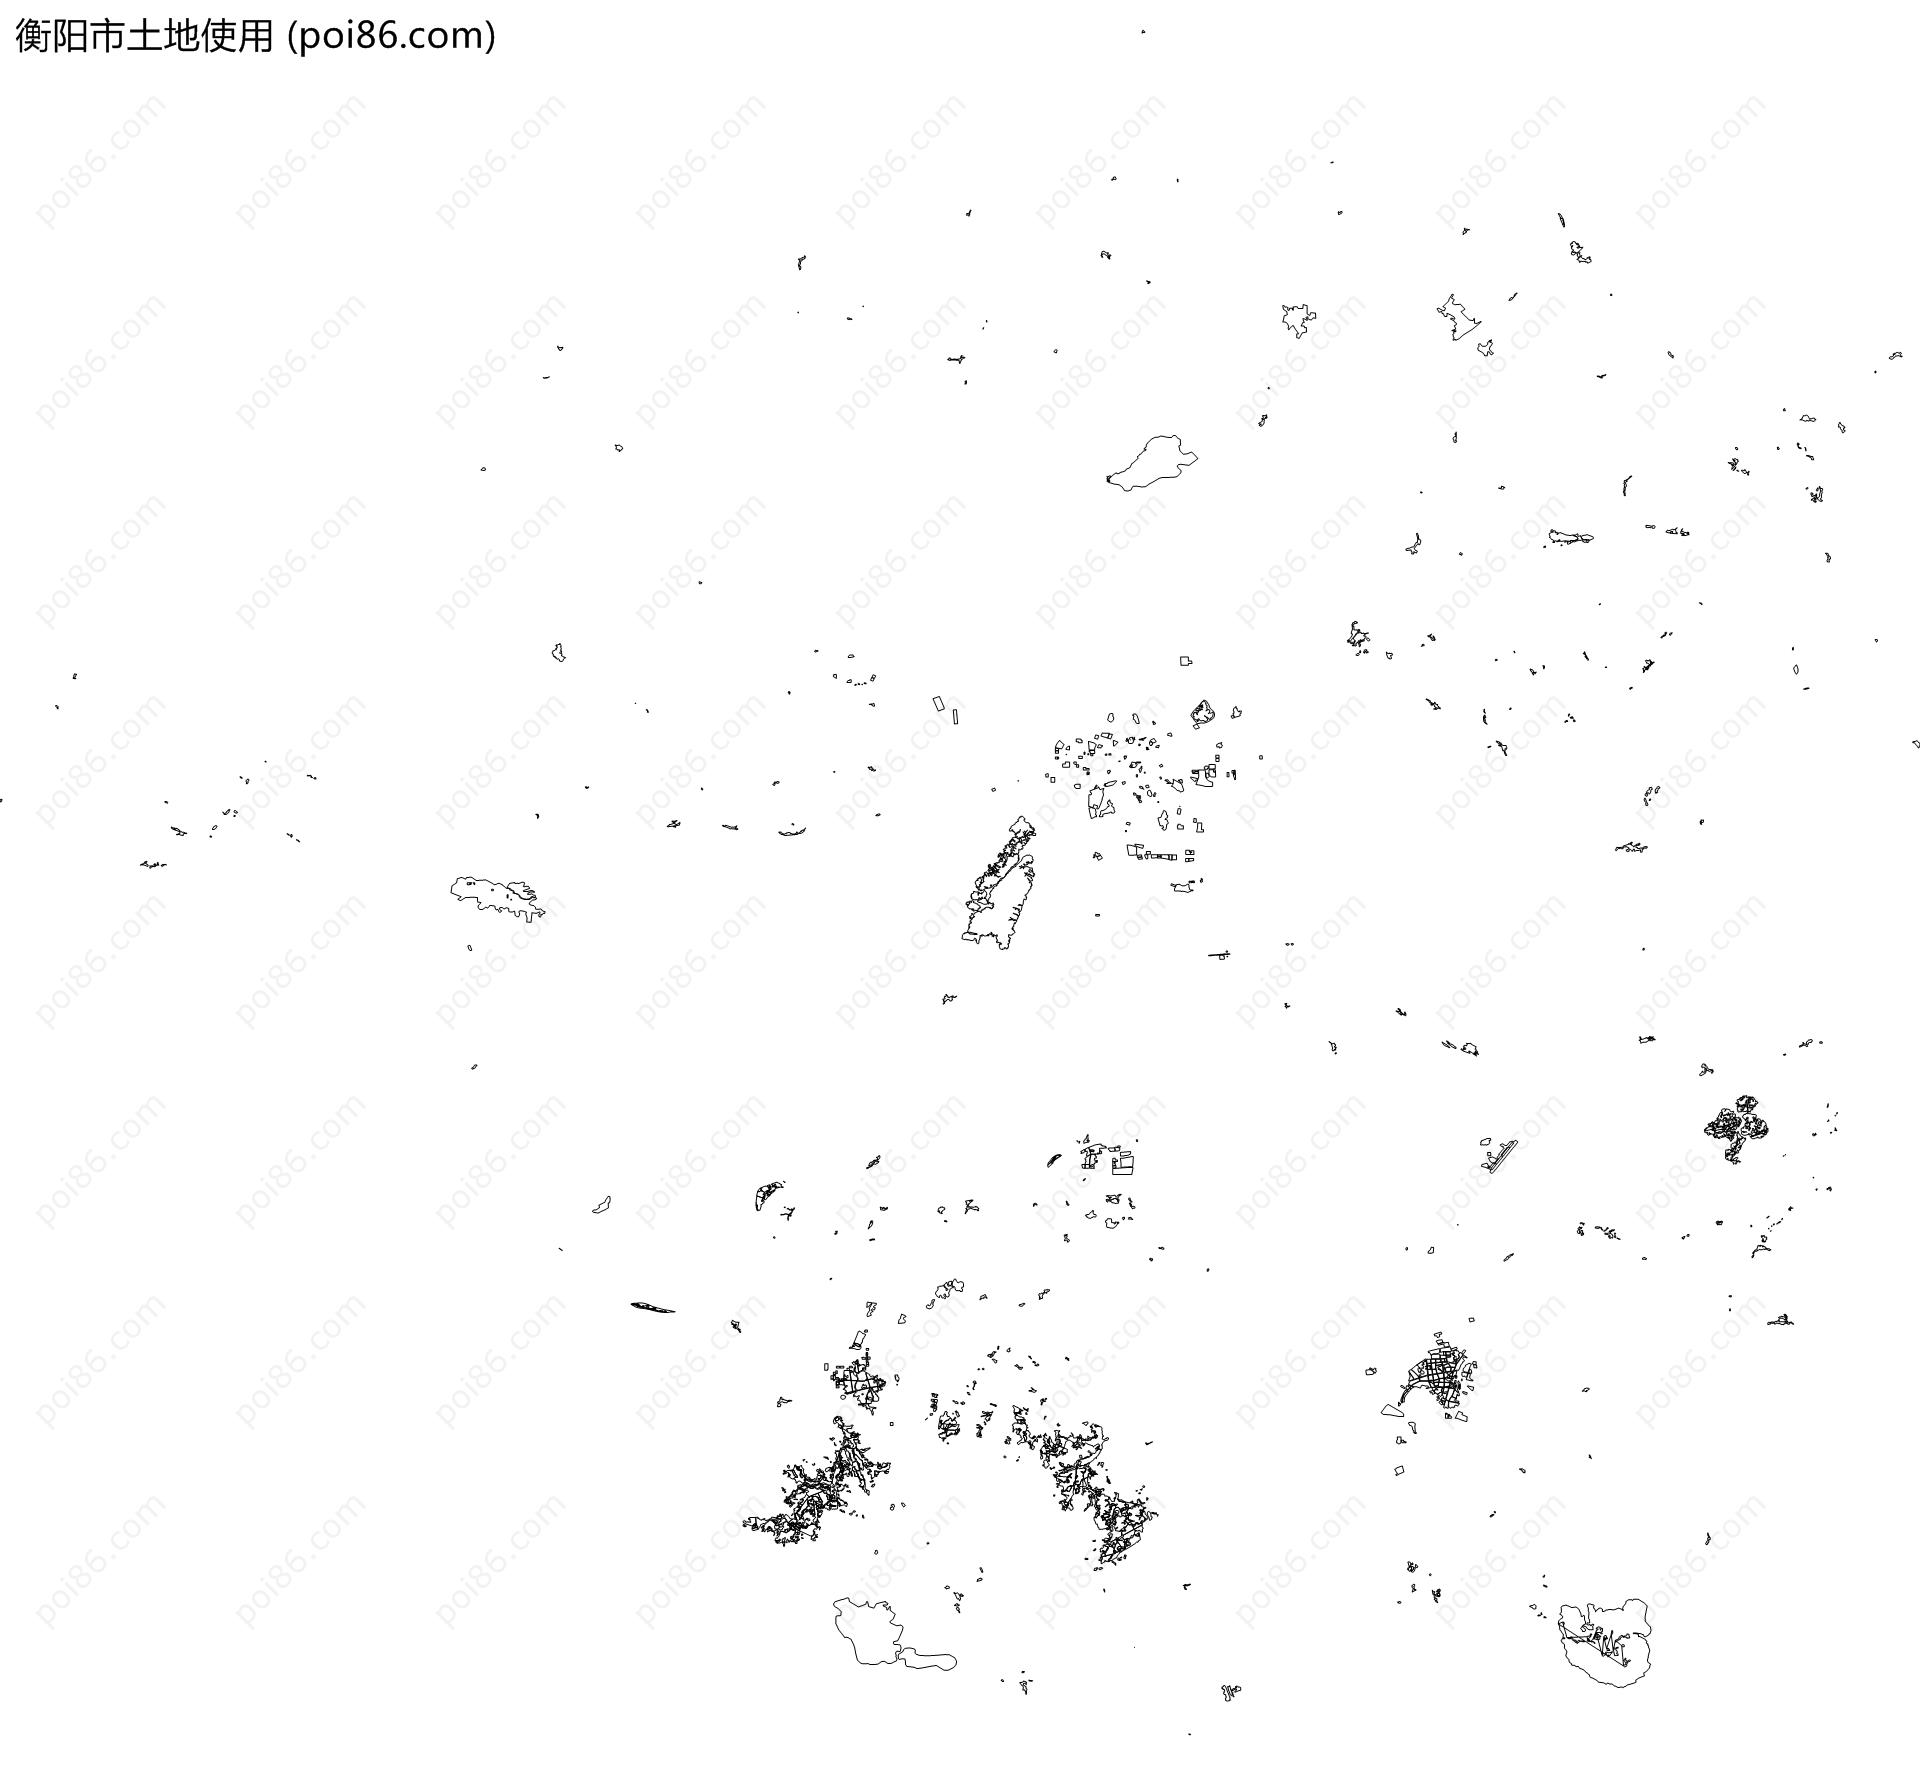 衡阳市土地使用地图